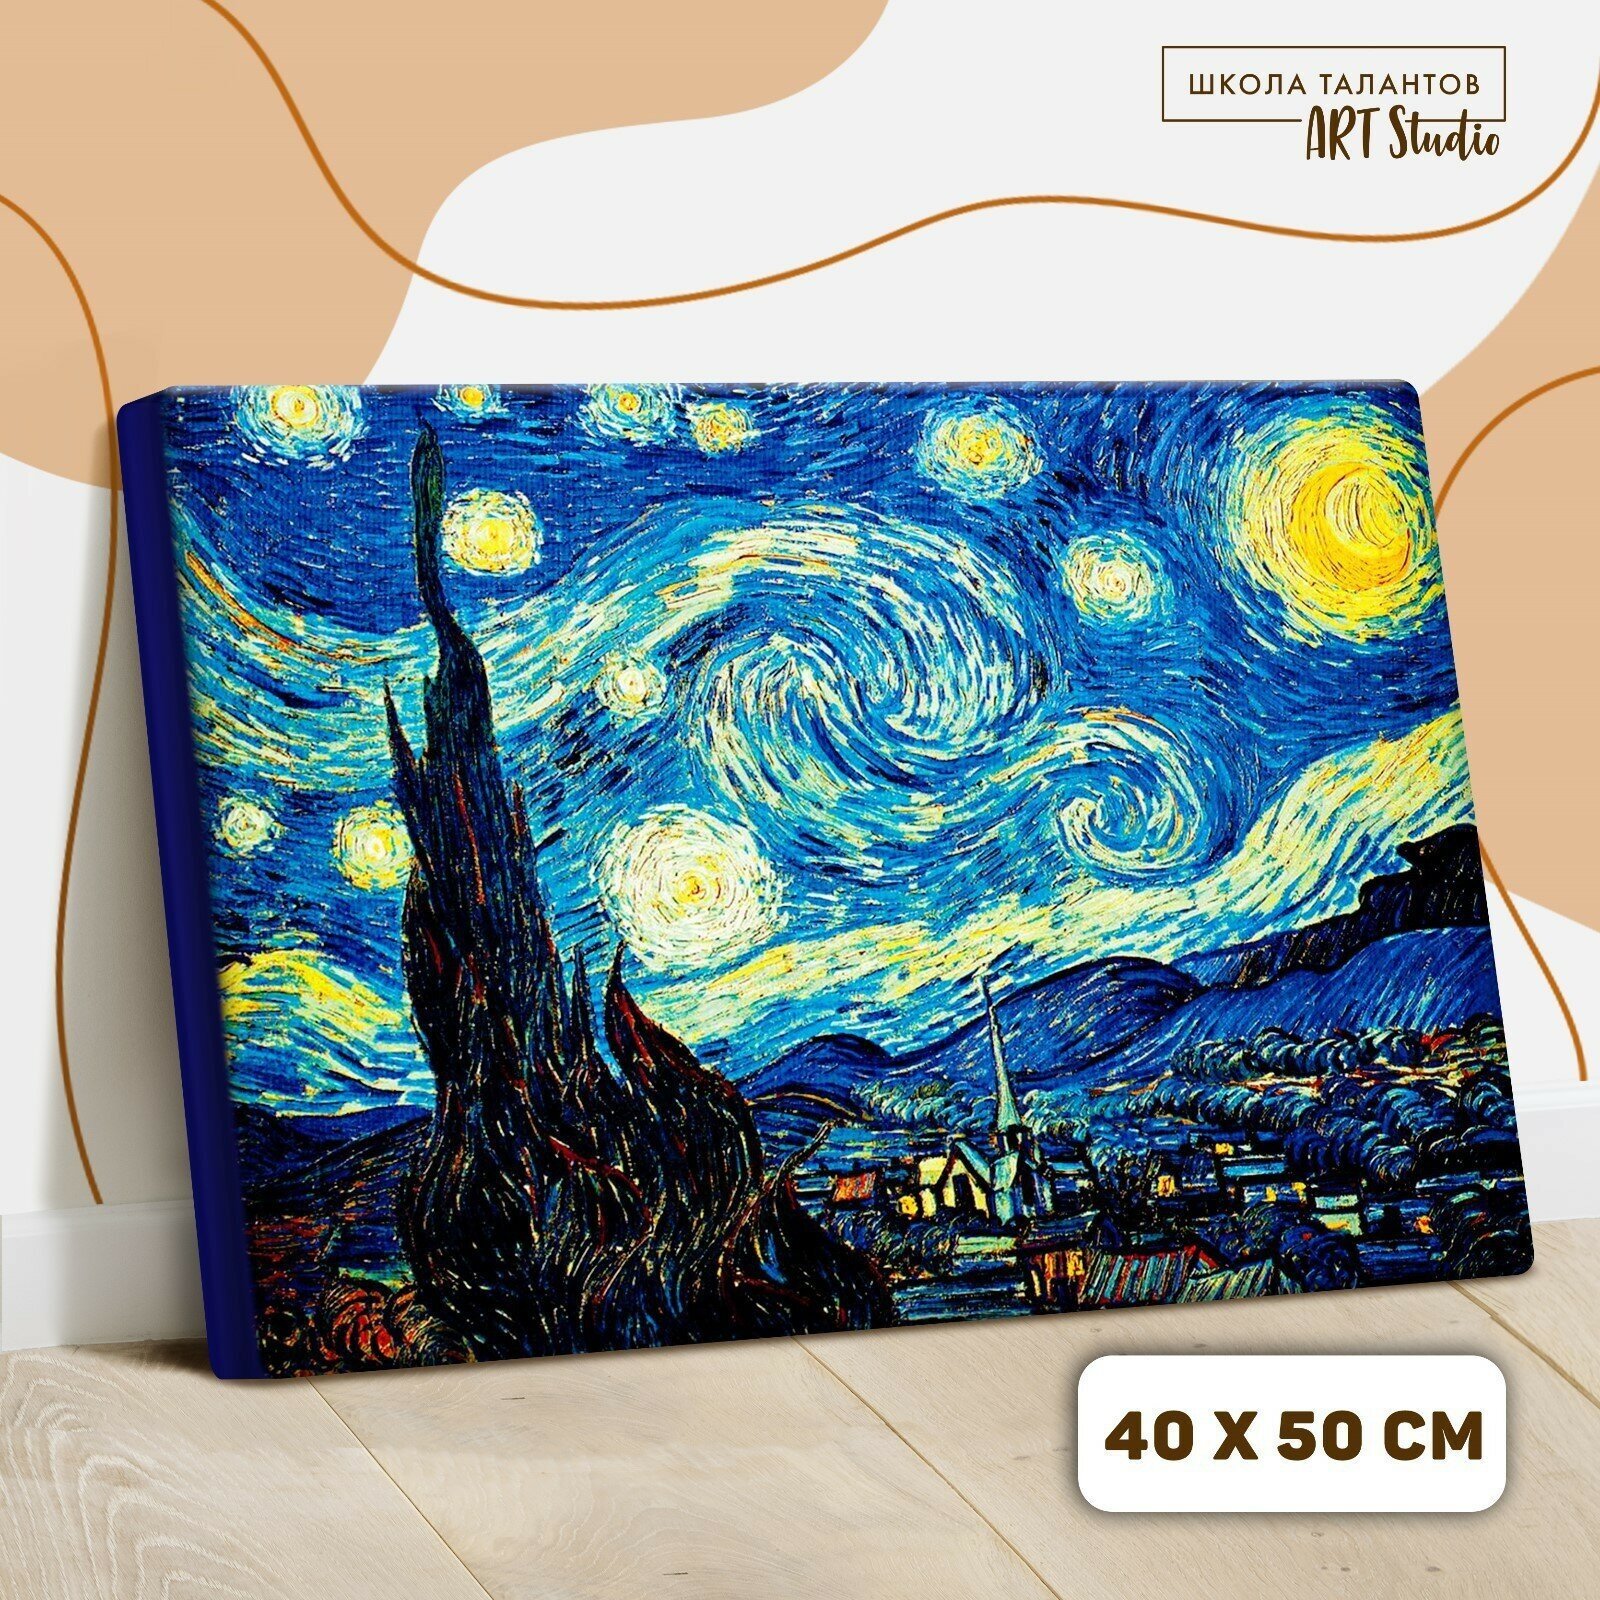 Картина по номерам на холсте с подрамником «Звёздная ночь» Винсент ван Гог Школа талантов - фото №14